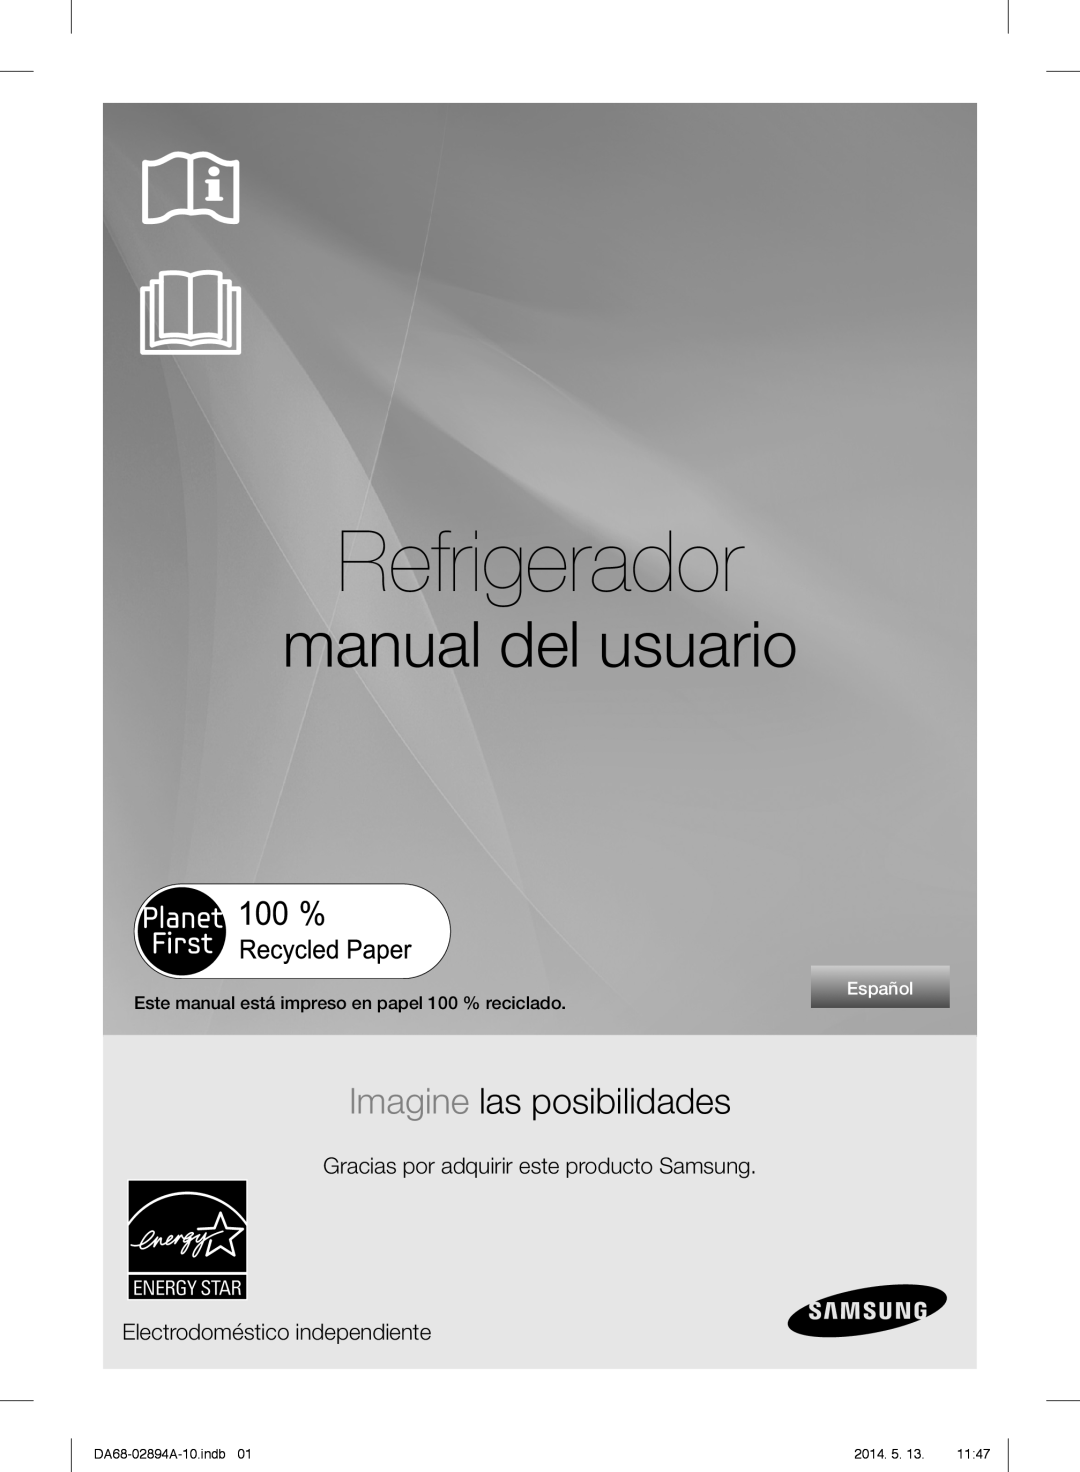 Samsung RF31FMESBSR Refrigerador, manual del usuario, Imagine las posibilidades, Electrodoméstico independiente, Español 